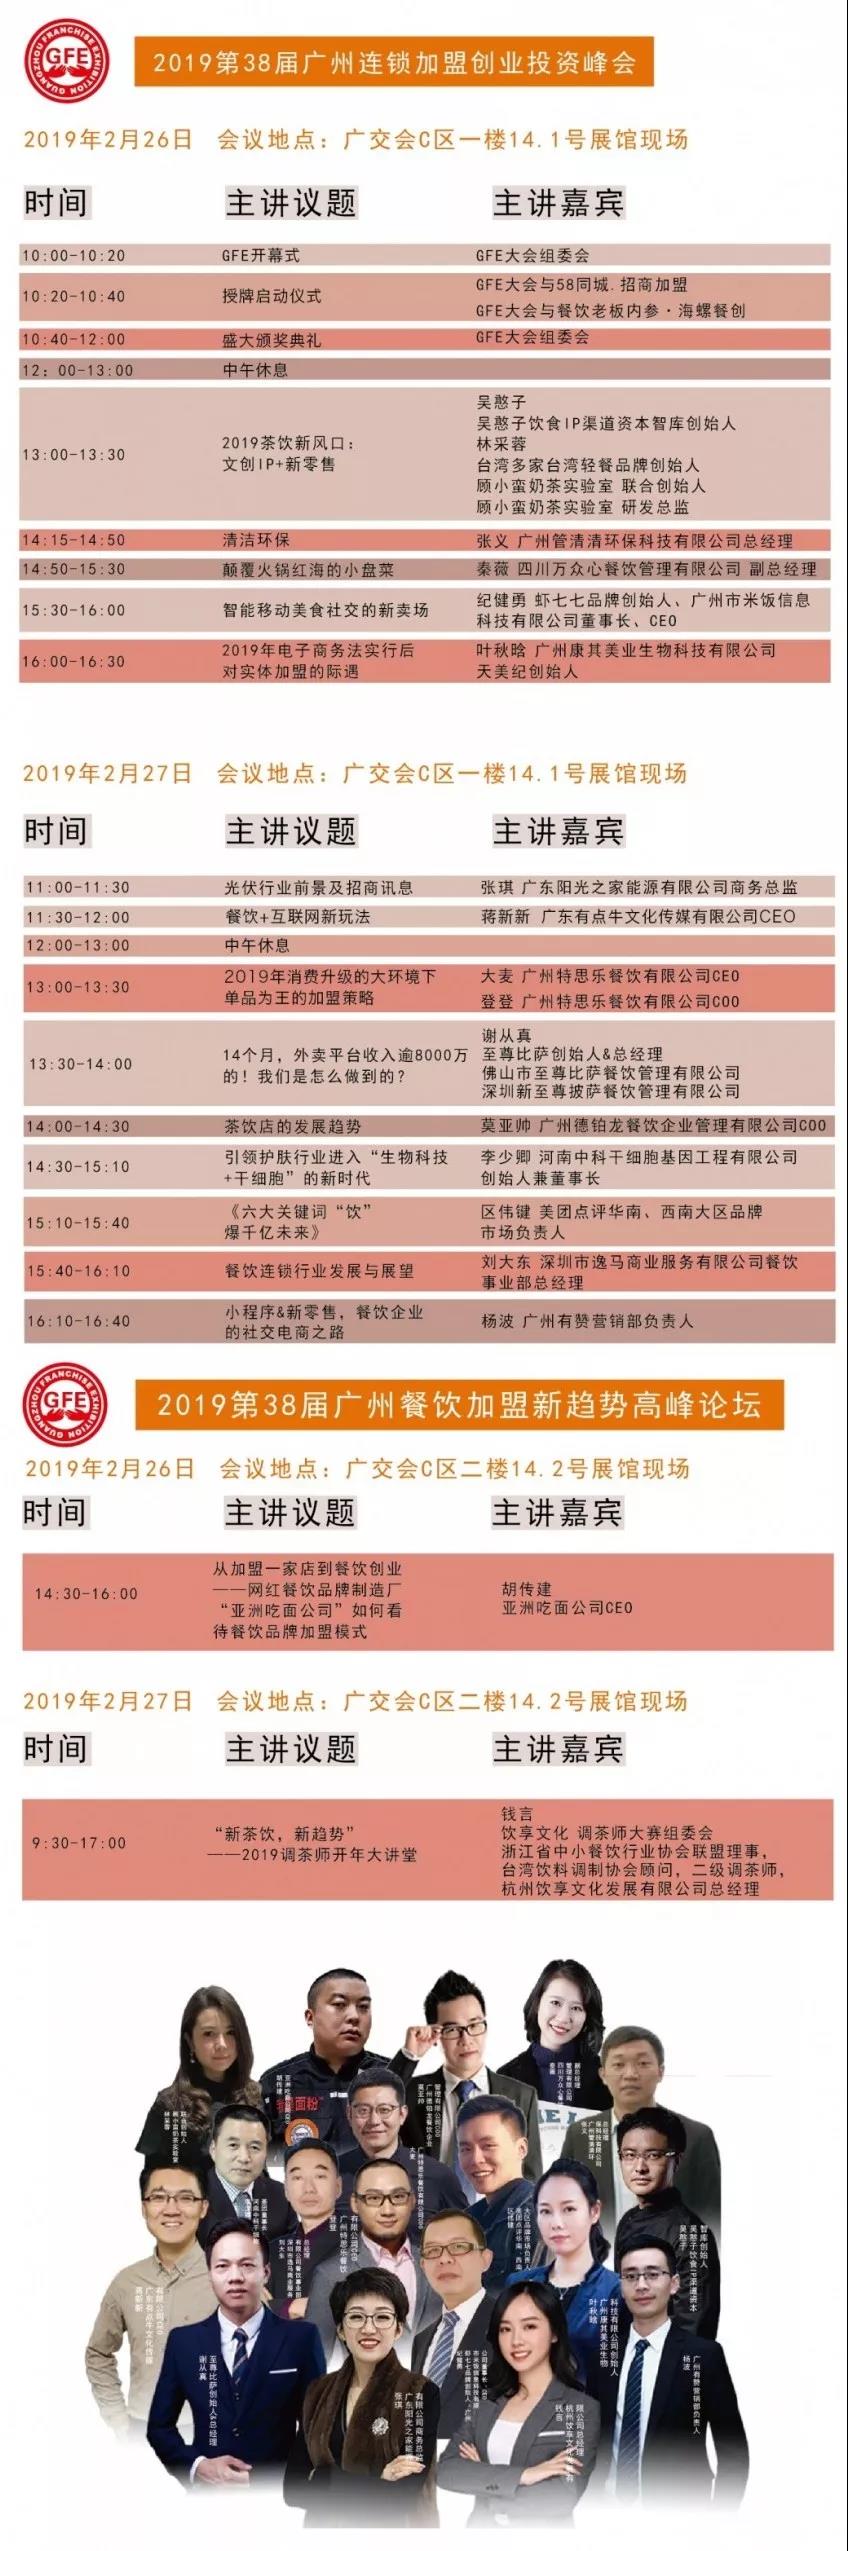 GFE广州特许加盟展-展会现场20